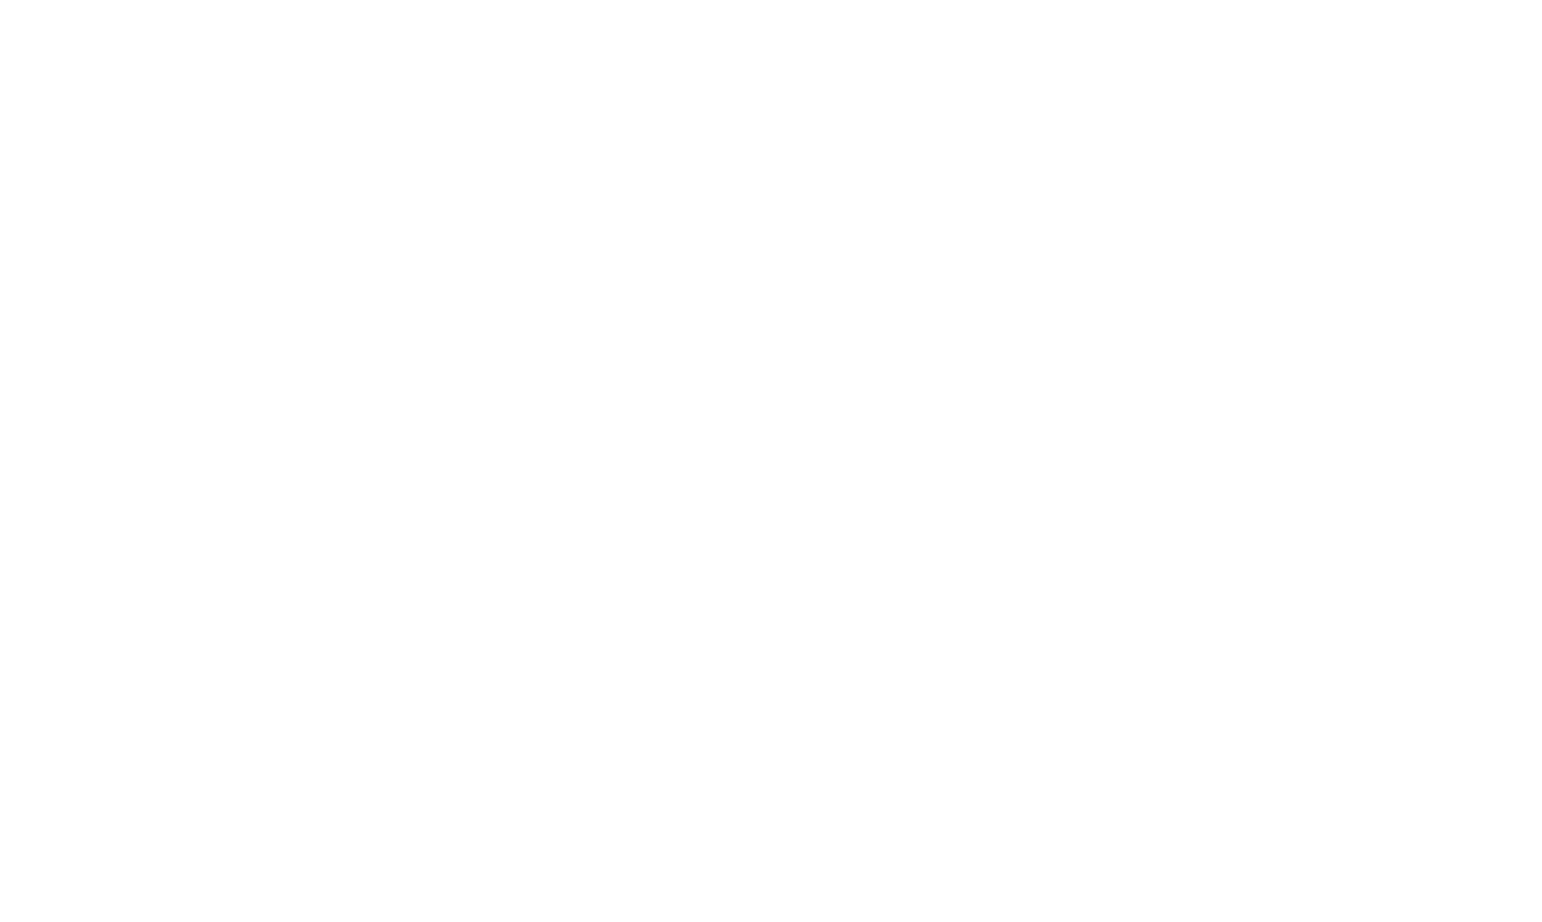 Cross River Bank logo pour fonds sombres (PNG transparent)